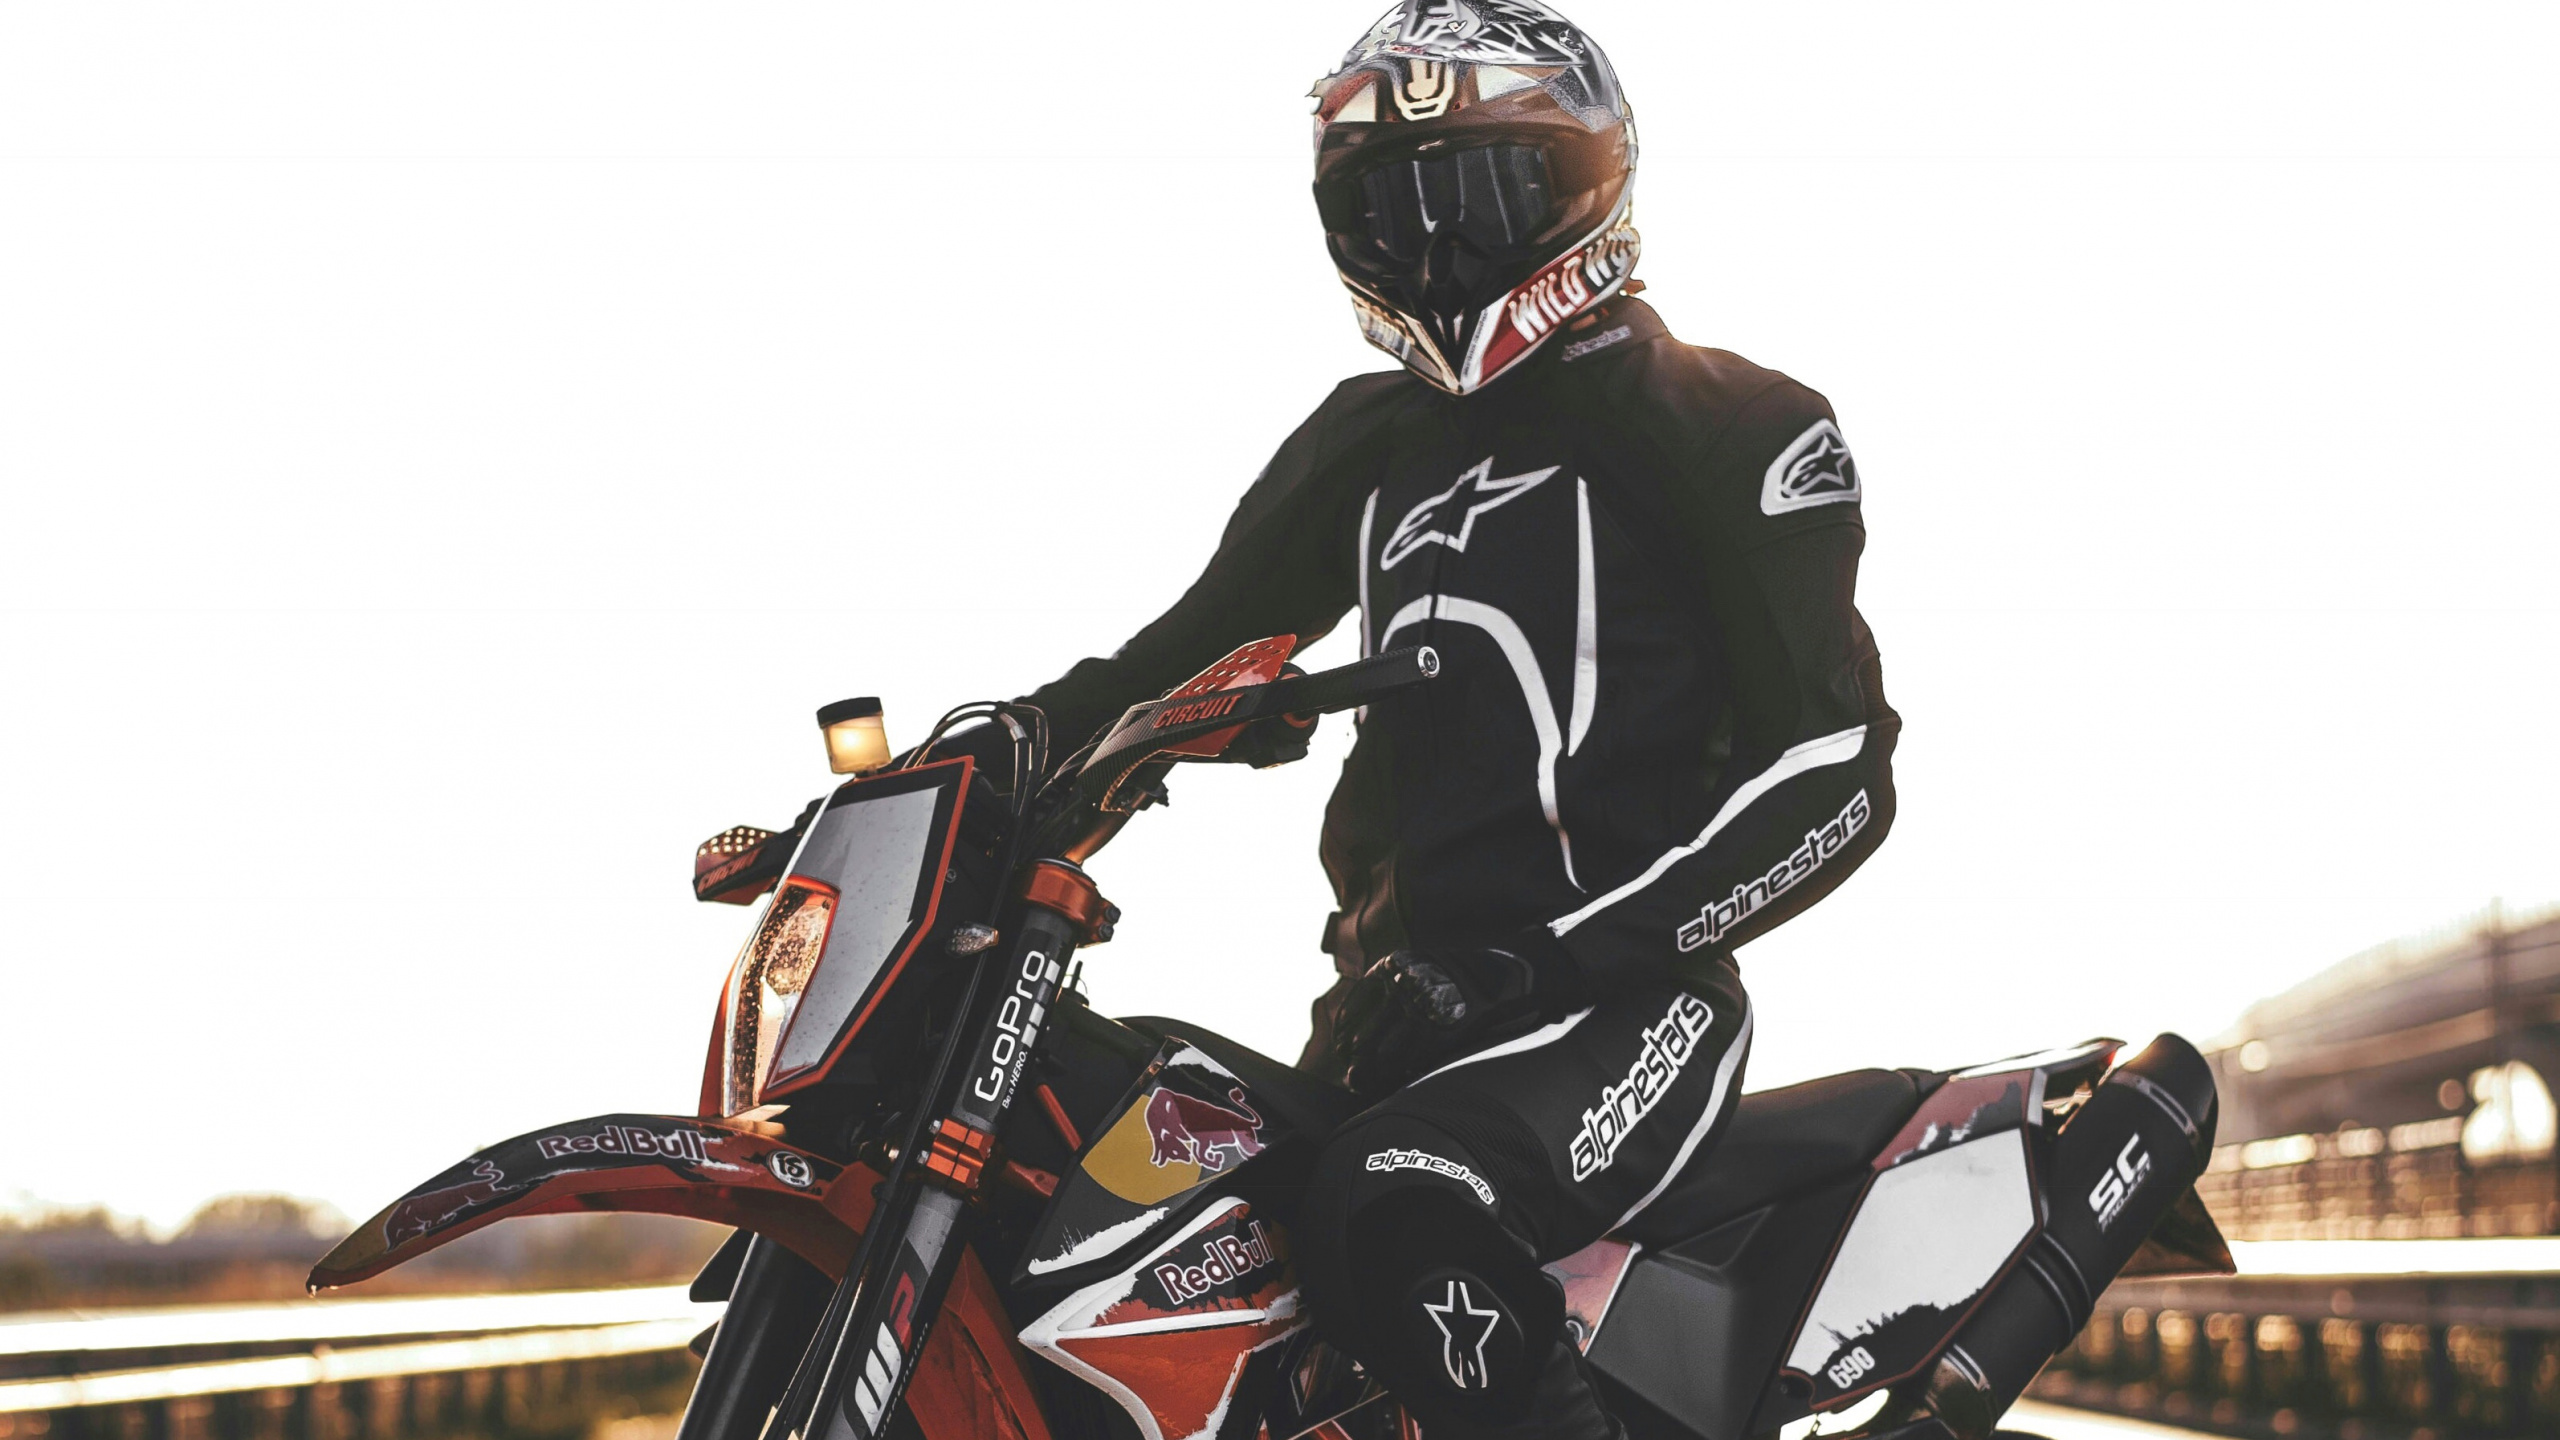 摩托车头盔, 滑胎, 摩托车越野赛, 摩托车赛车, 摩托车手 壁纸 2560x1440 允许